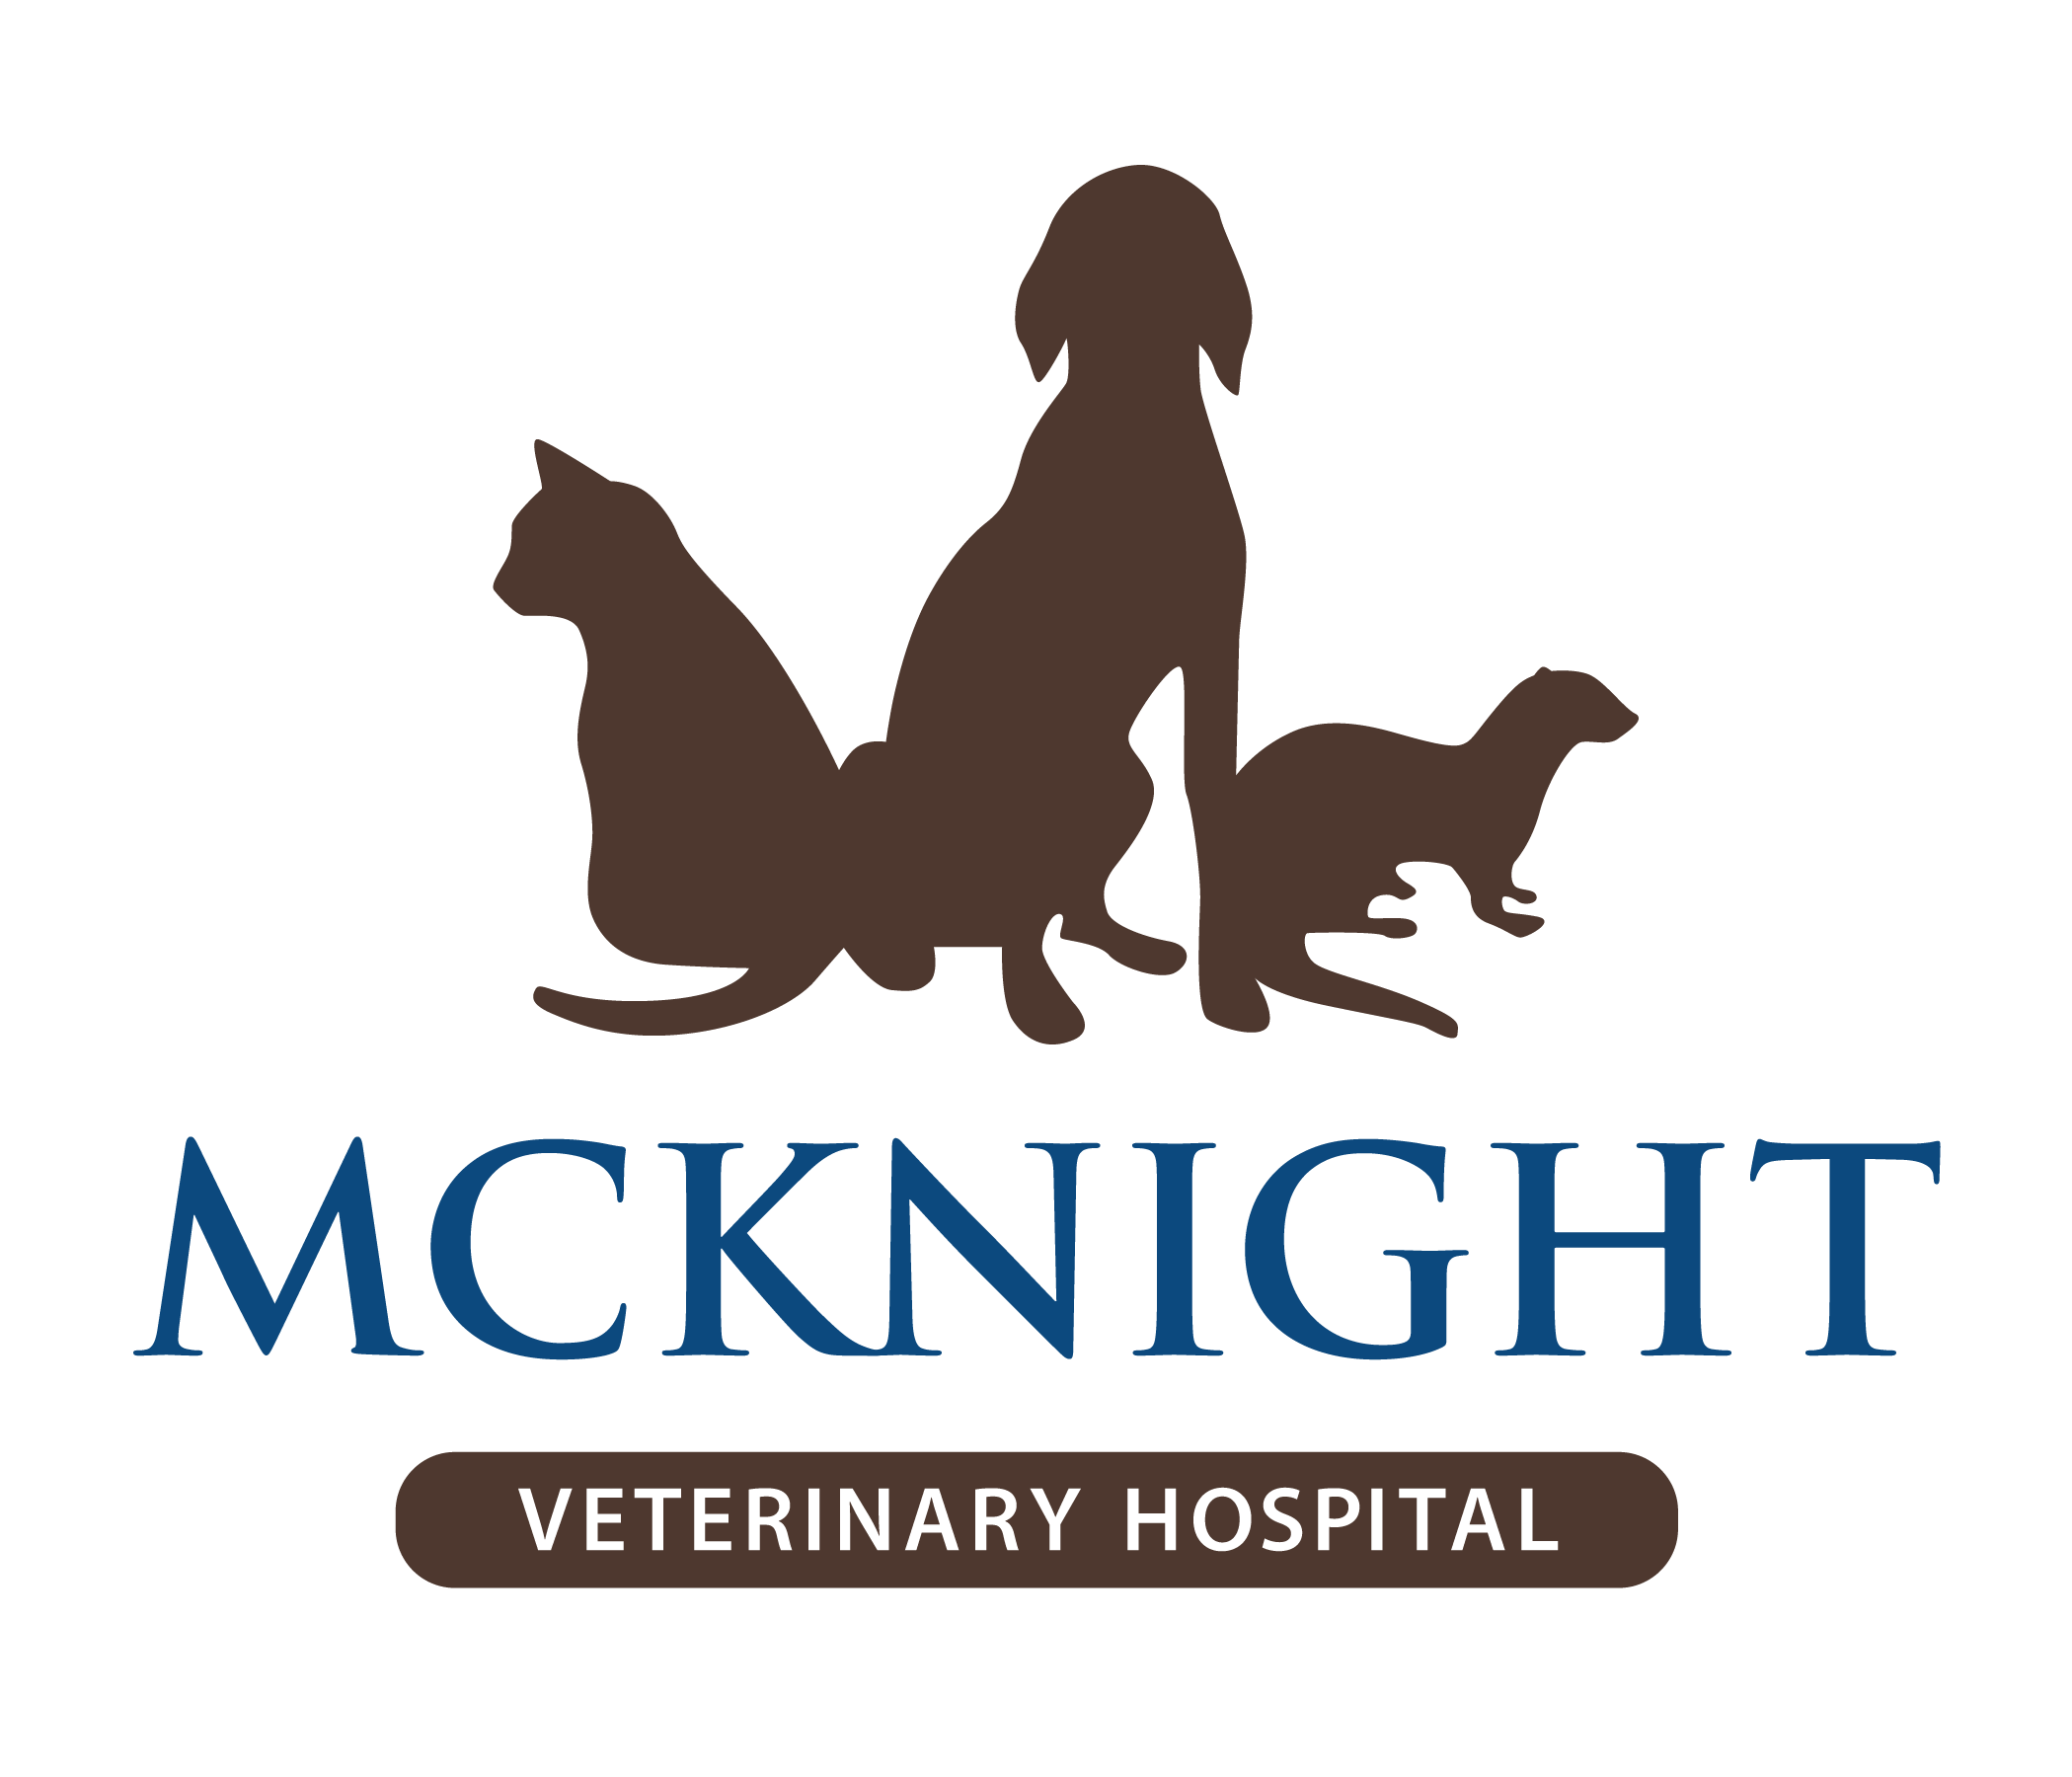 McKnight Veterinary Hospital: Veterinarian in Calgary, Alberta